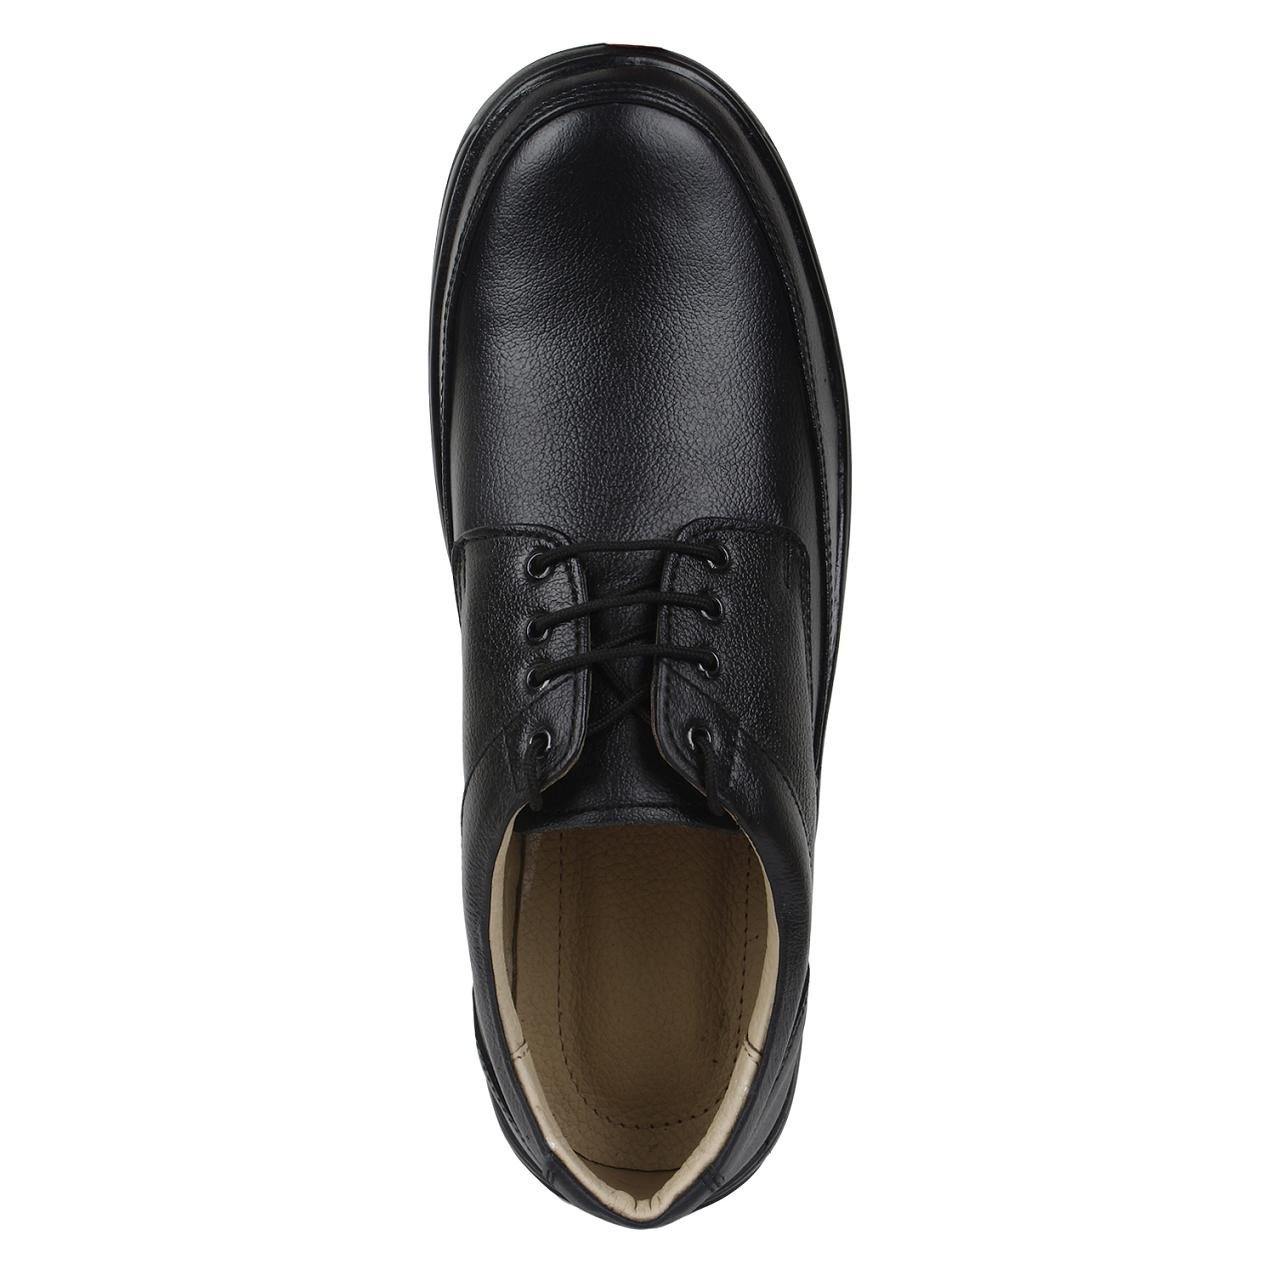 SeeandWear Formal Shoes For Men. Genuine Leather Black Office Wear Shoes. - SeeandWear